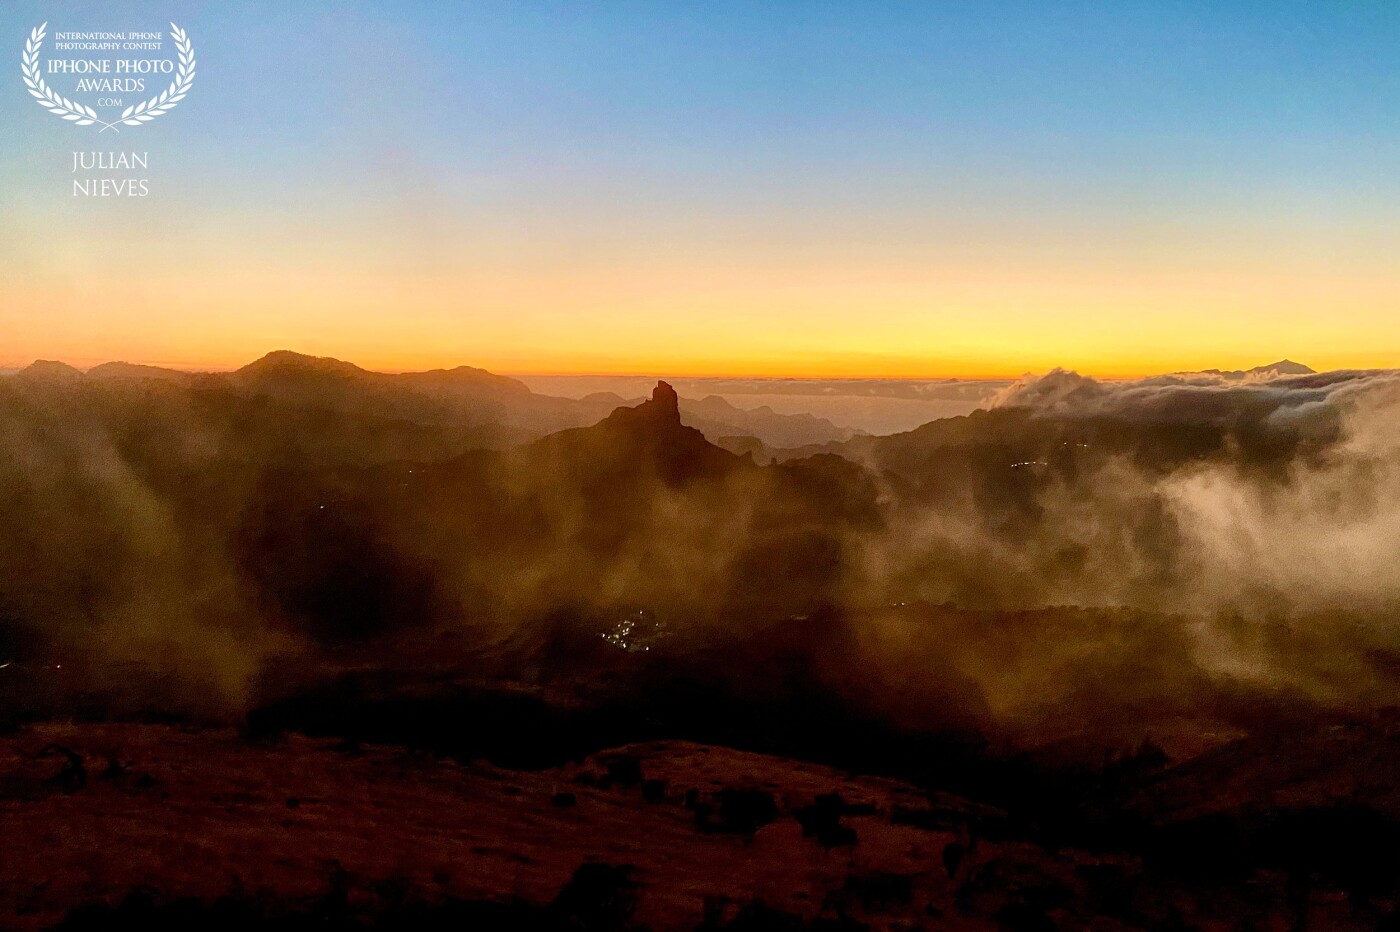 Atardecer de nieblas en Tejeda, dejando ver entre  las nieblas uno de los iconos de la isla de Gran Canaria, como es esta bella imagen de Roque Bentayga.